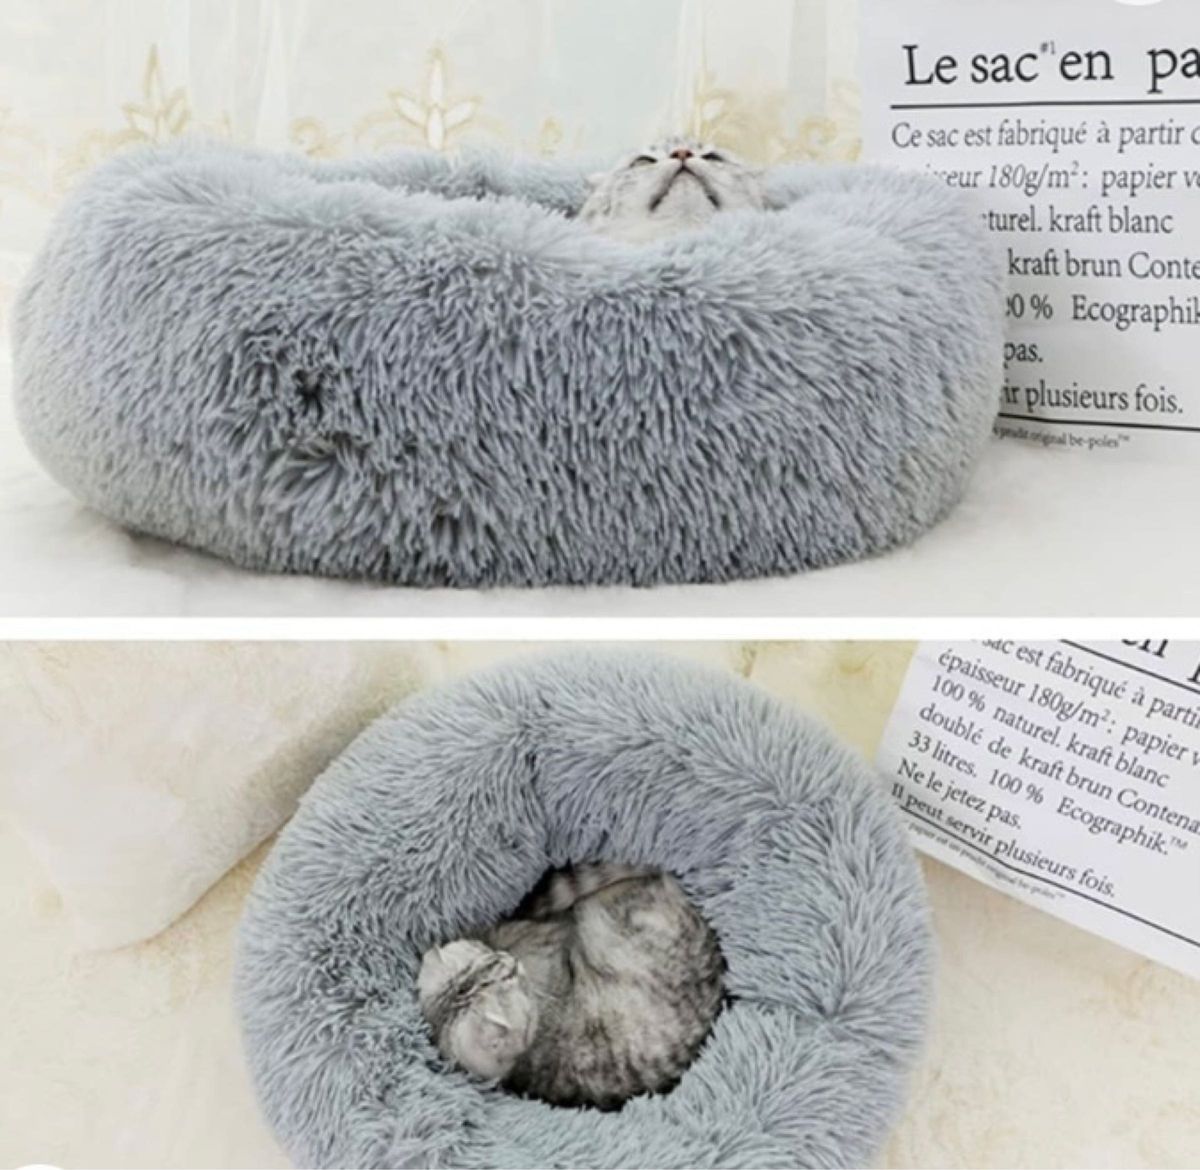 猫 ベッド 犬 ベッド クッション ラウンド型 もふもふ 丸型 洗える 猫用 小型犬用 ペット用品 (50cm, ライトグレー)